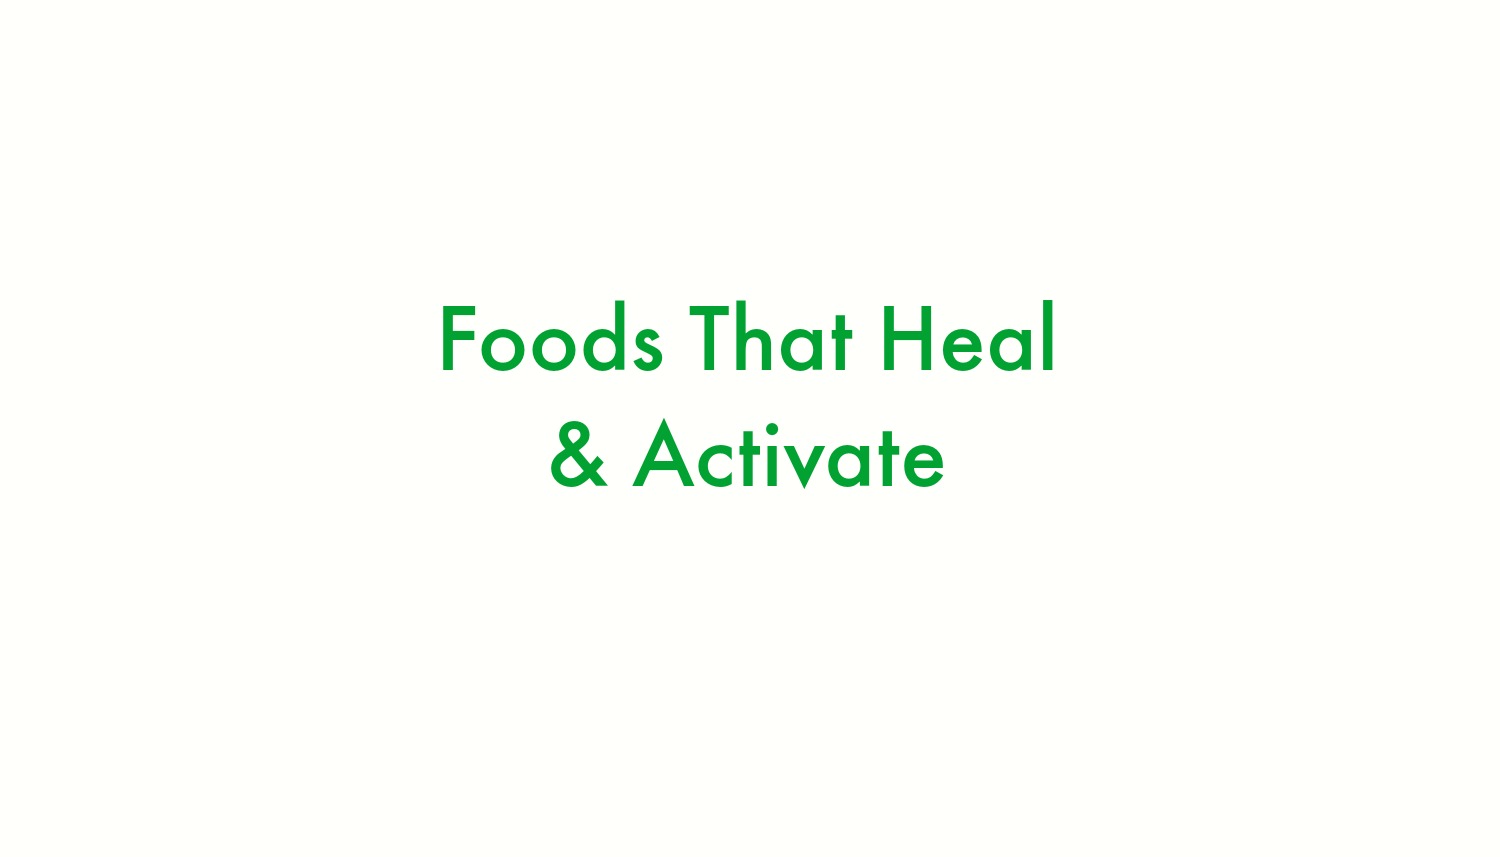 Foods that heal.jpg